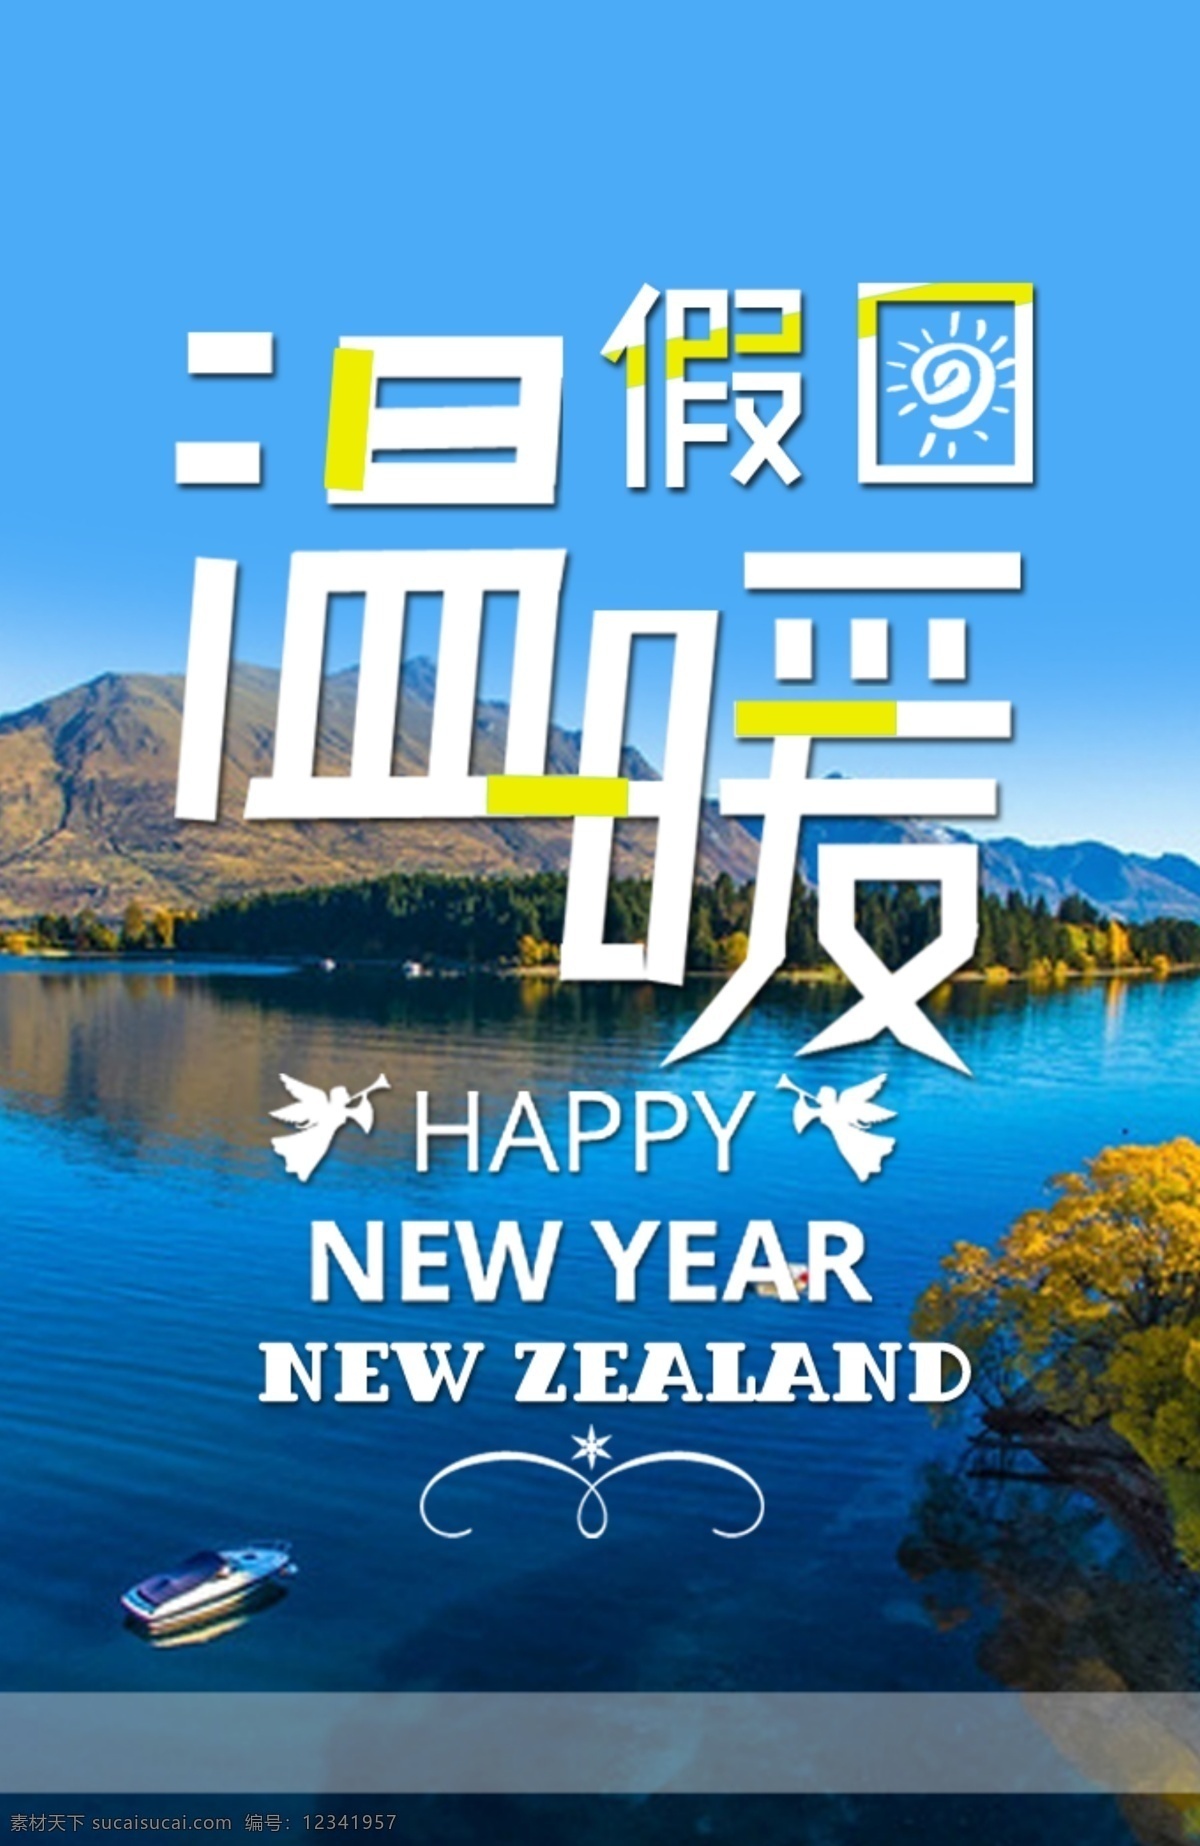 新西兰海报 夏日 新西兰 旅游 温暖夏日 海报 青色 天蓝色